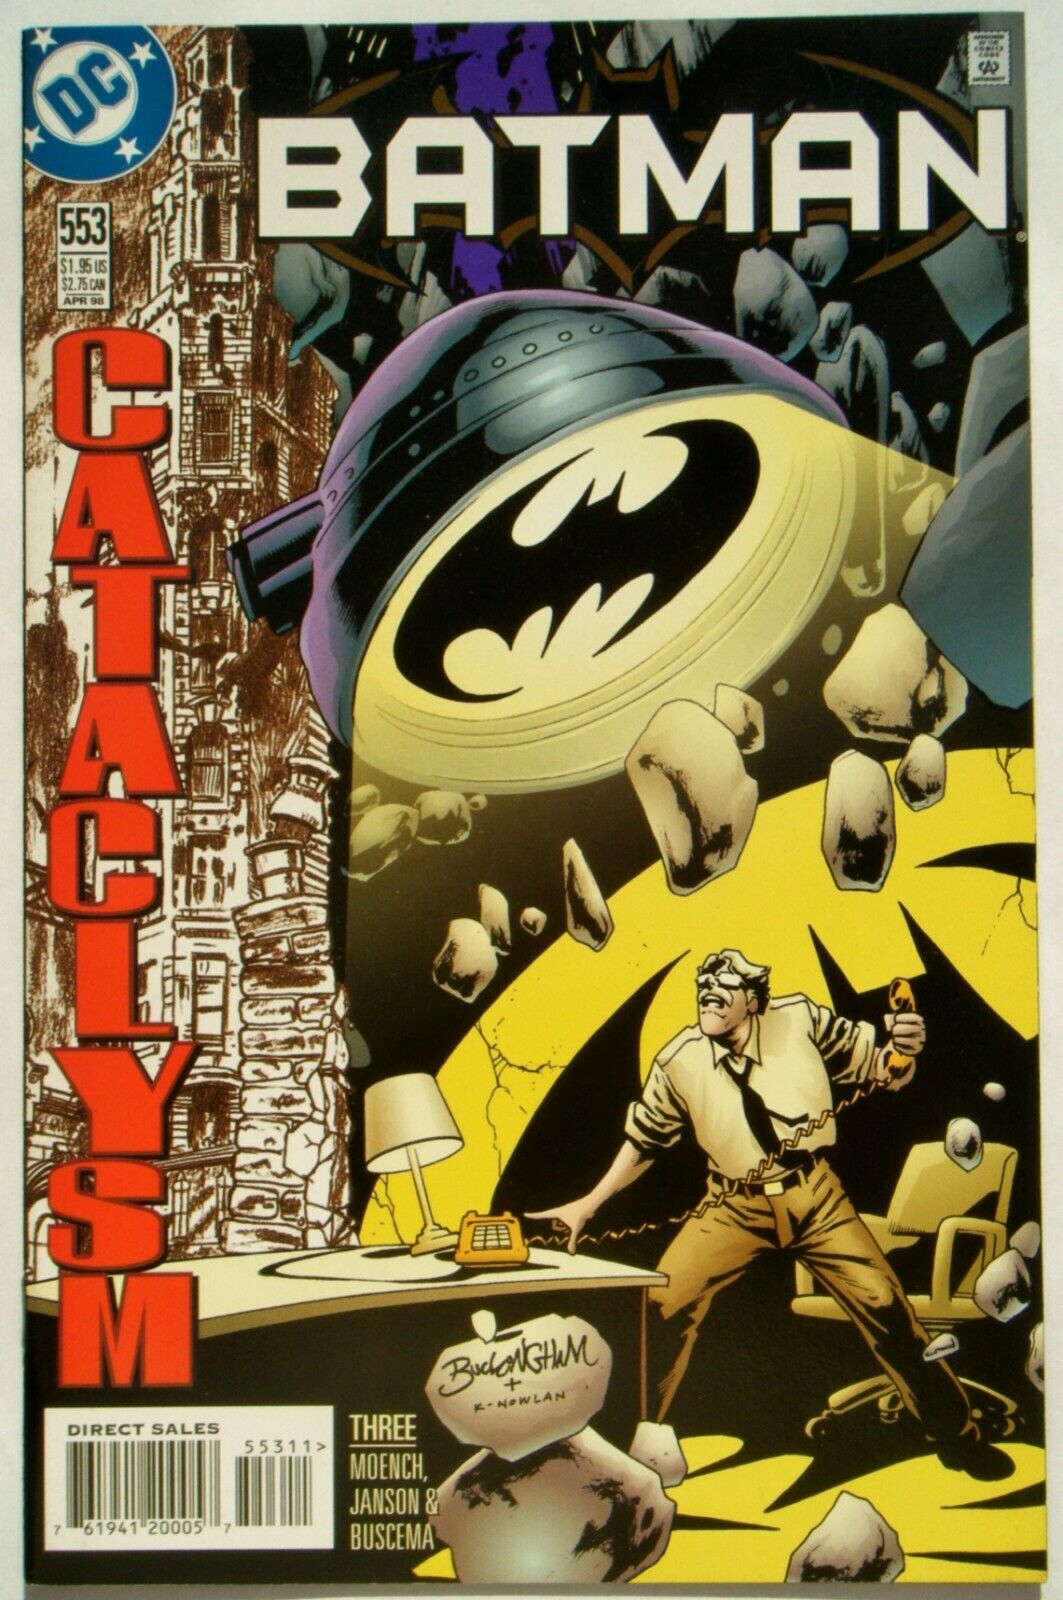 Batman #553 (Apr. 98') NM- (9.2) Cataclysm Part 3/ Moench Scripts & Janson Art